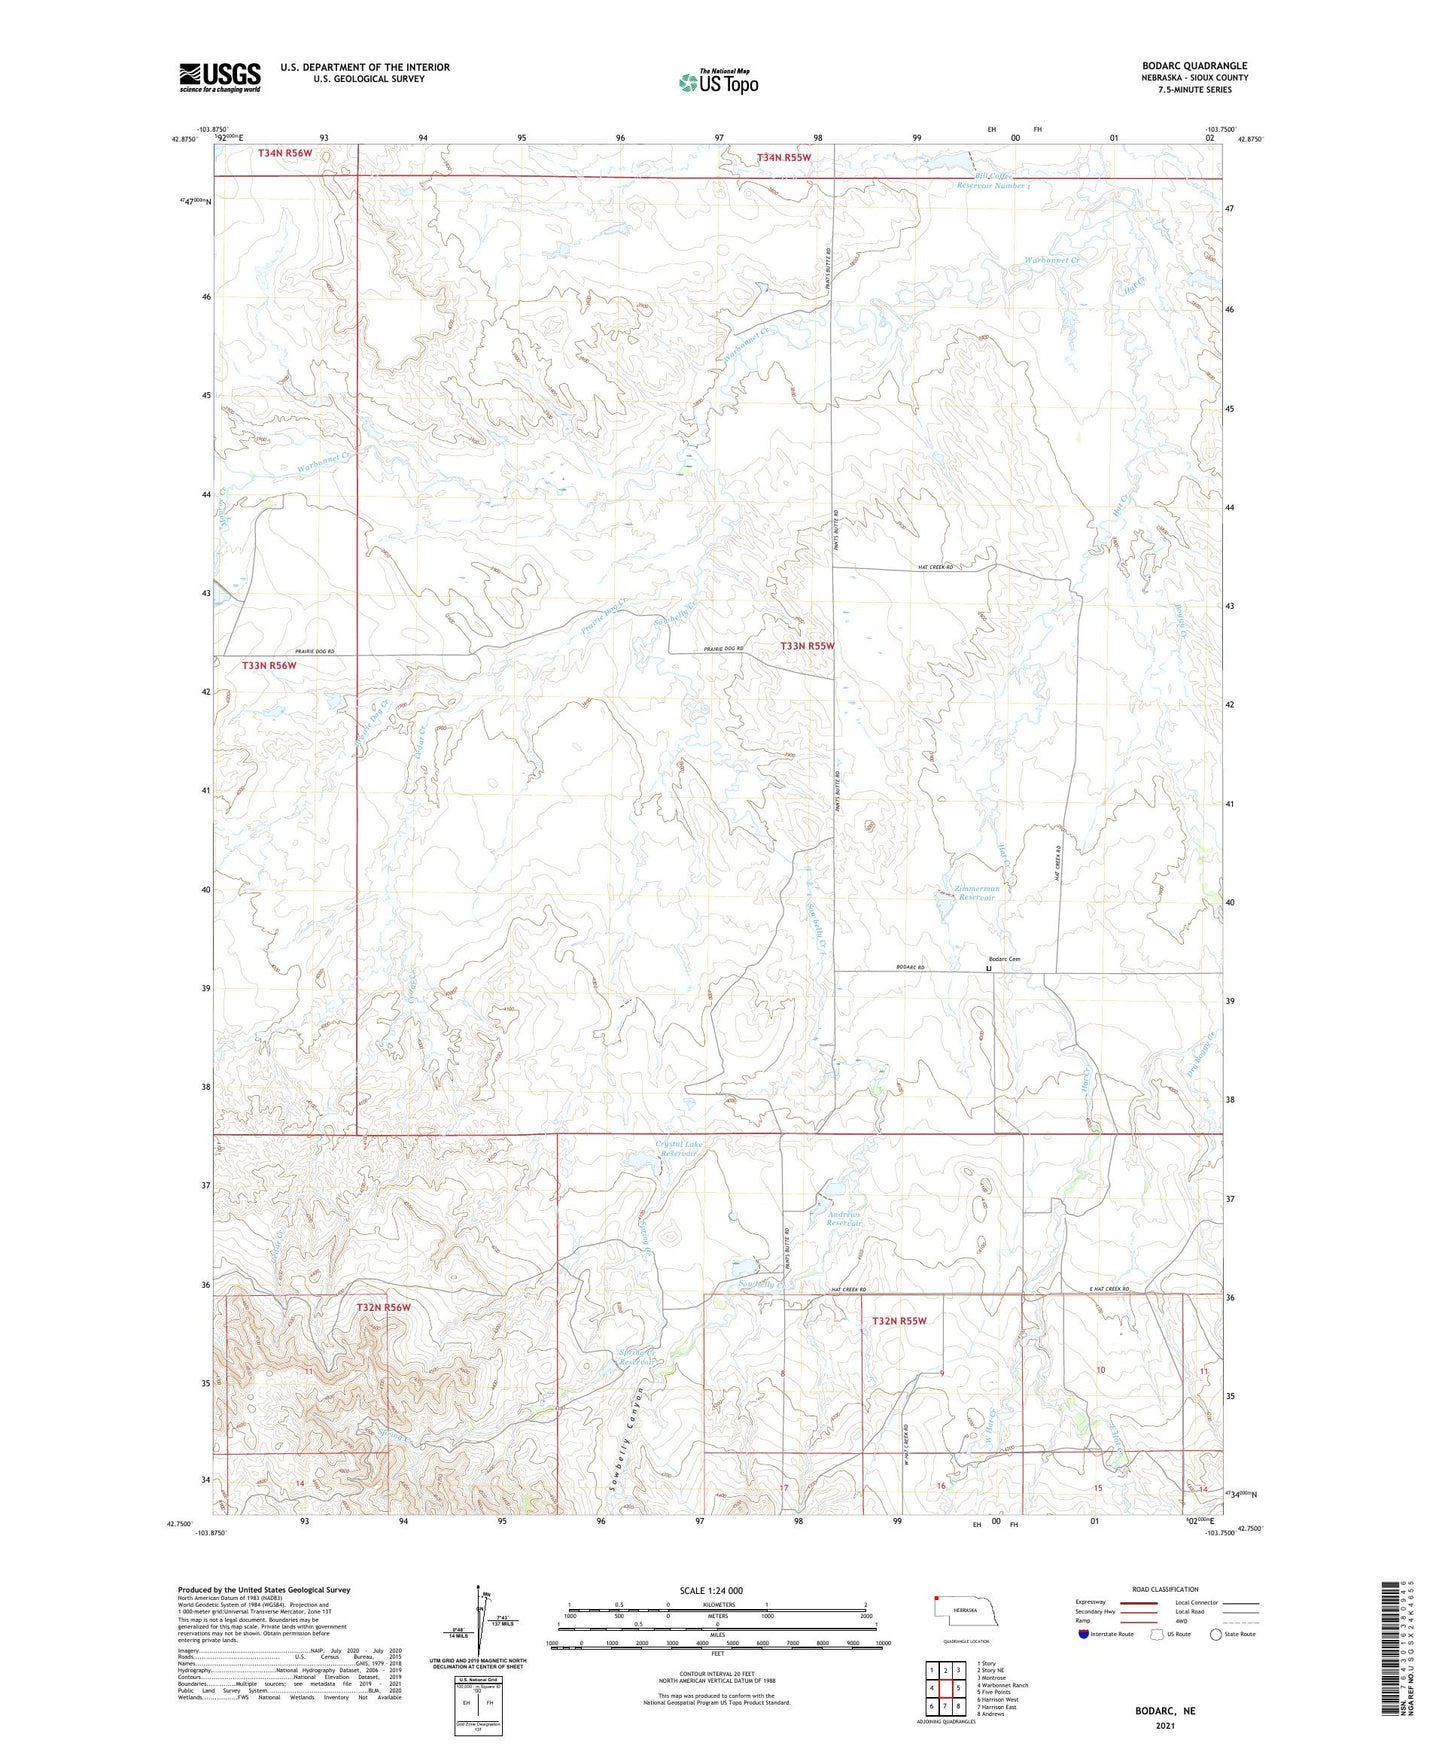 Bodarc Nebraska US Topo Map Image